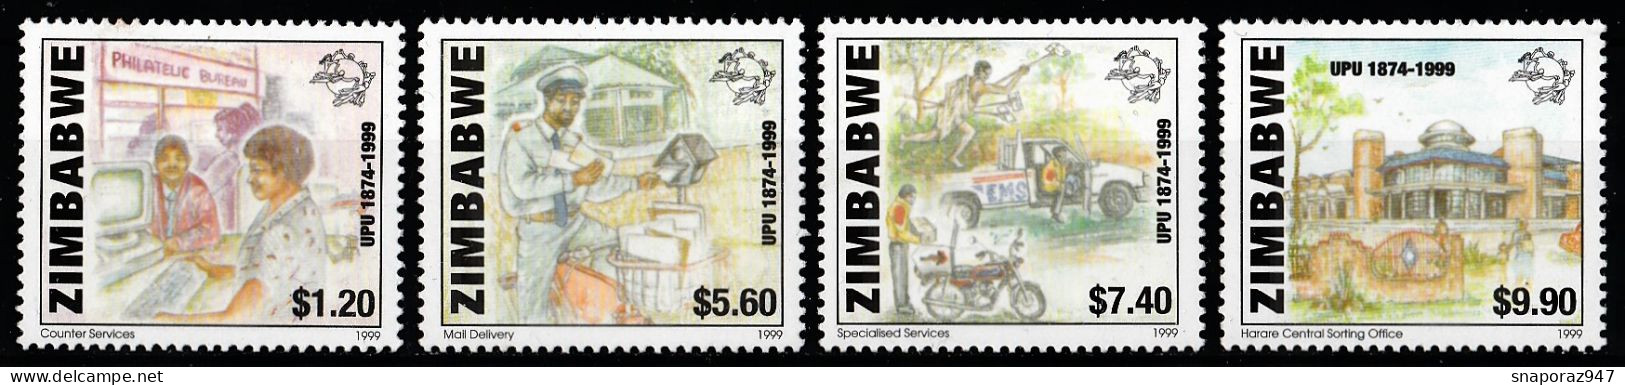 2000 Zimbabwe 125th UPU Set MNH** B578 - UPU (Unione Postale Universale)